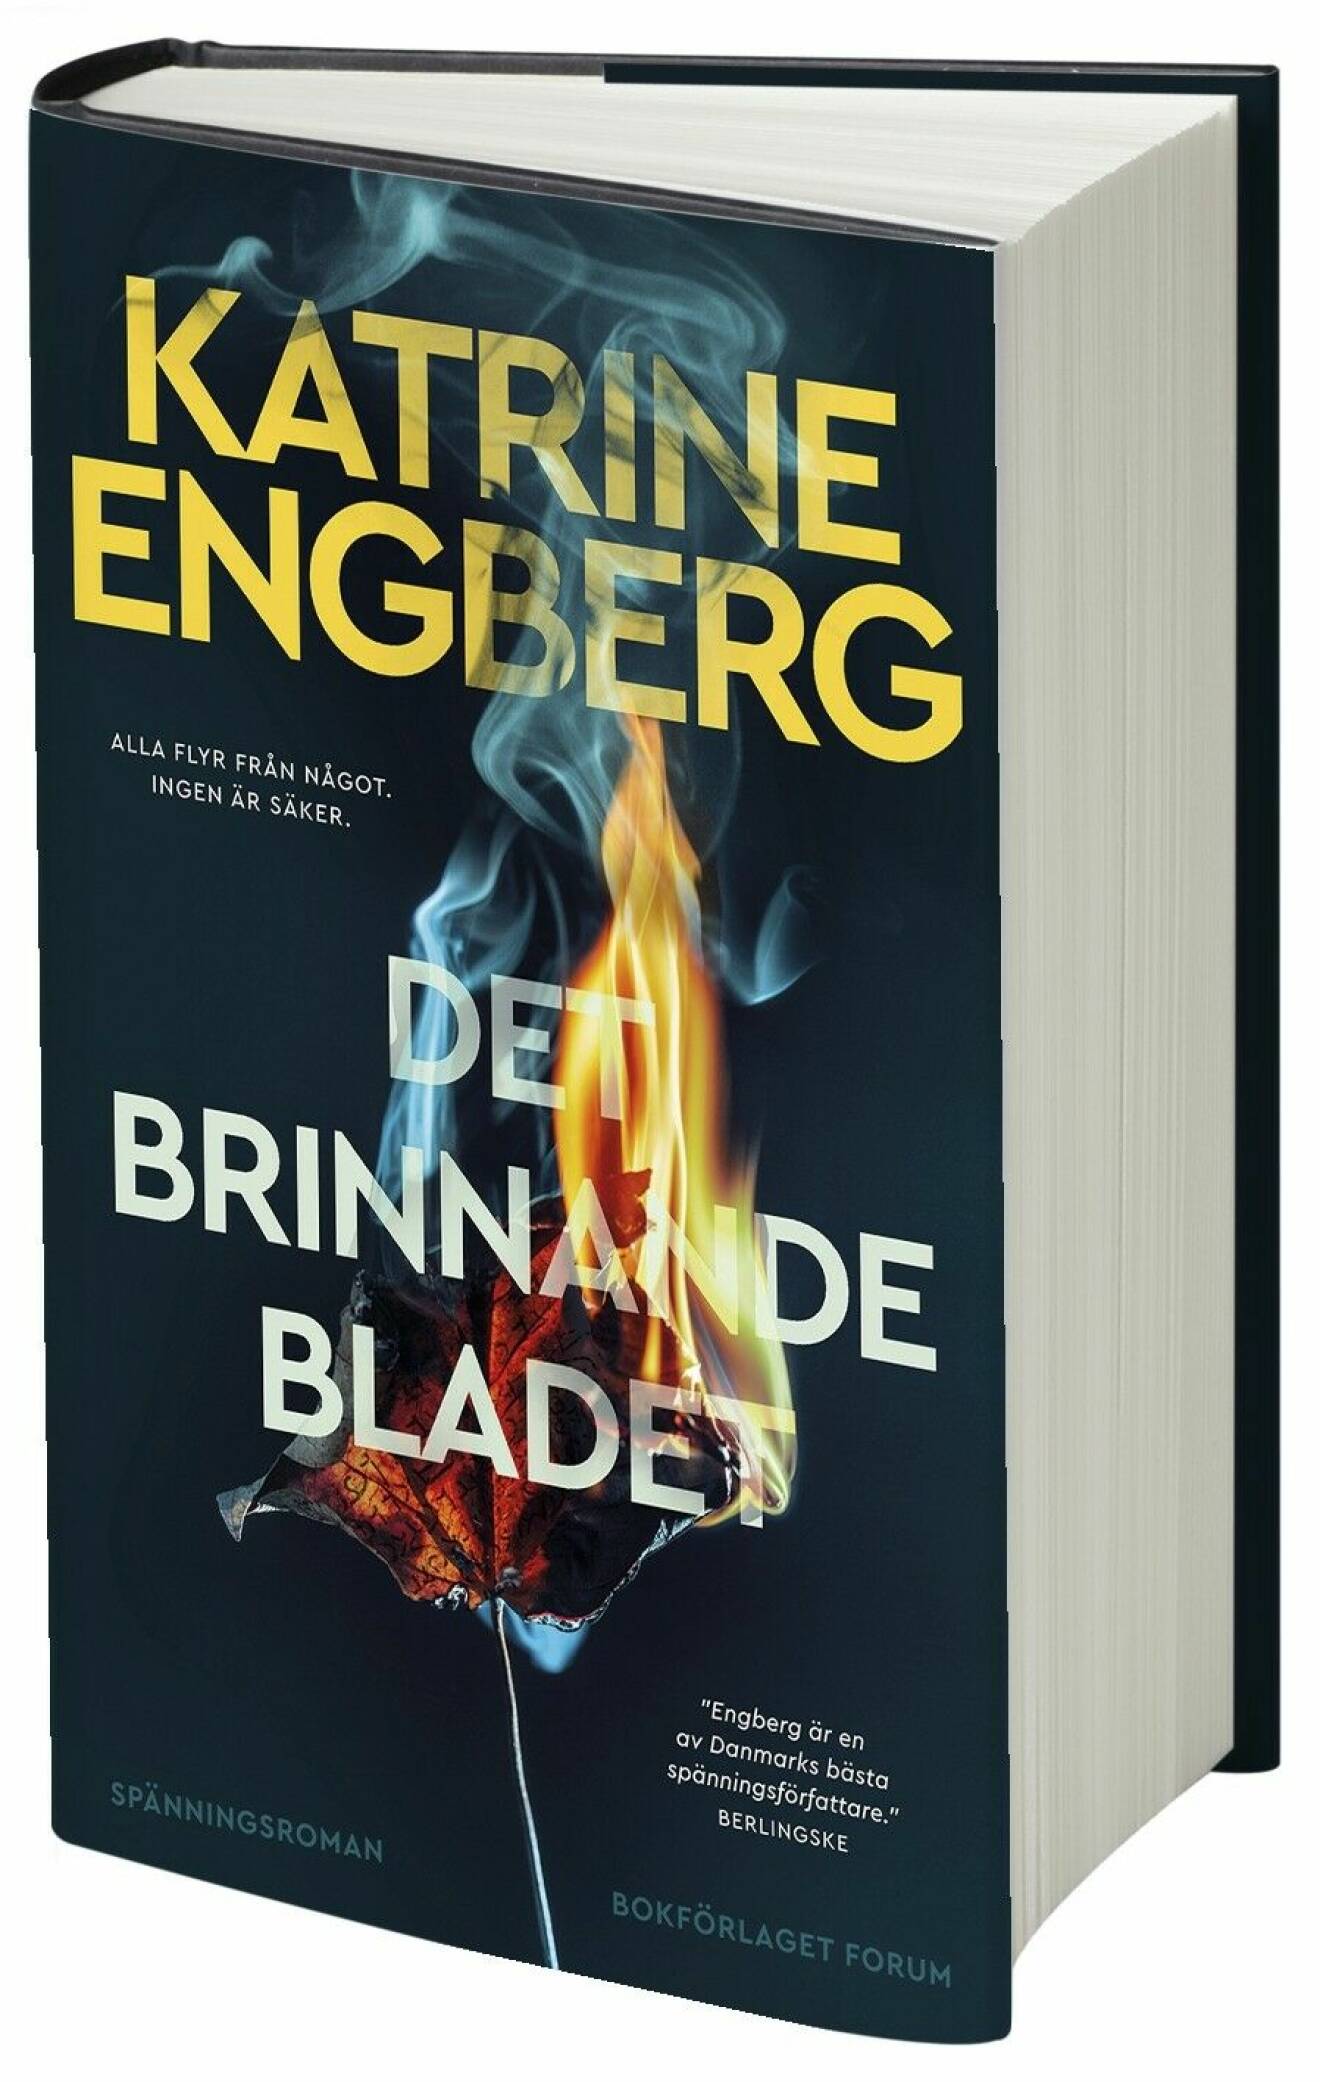 Det brinnande bladet av Katrine Engberg (Forum).